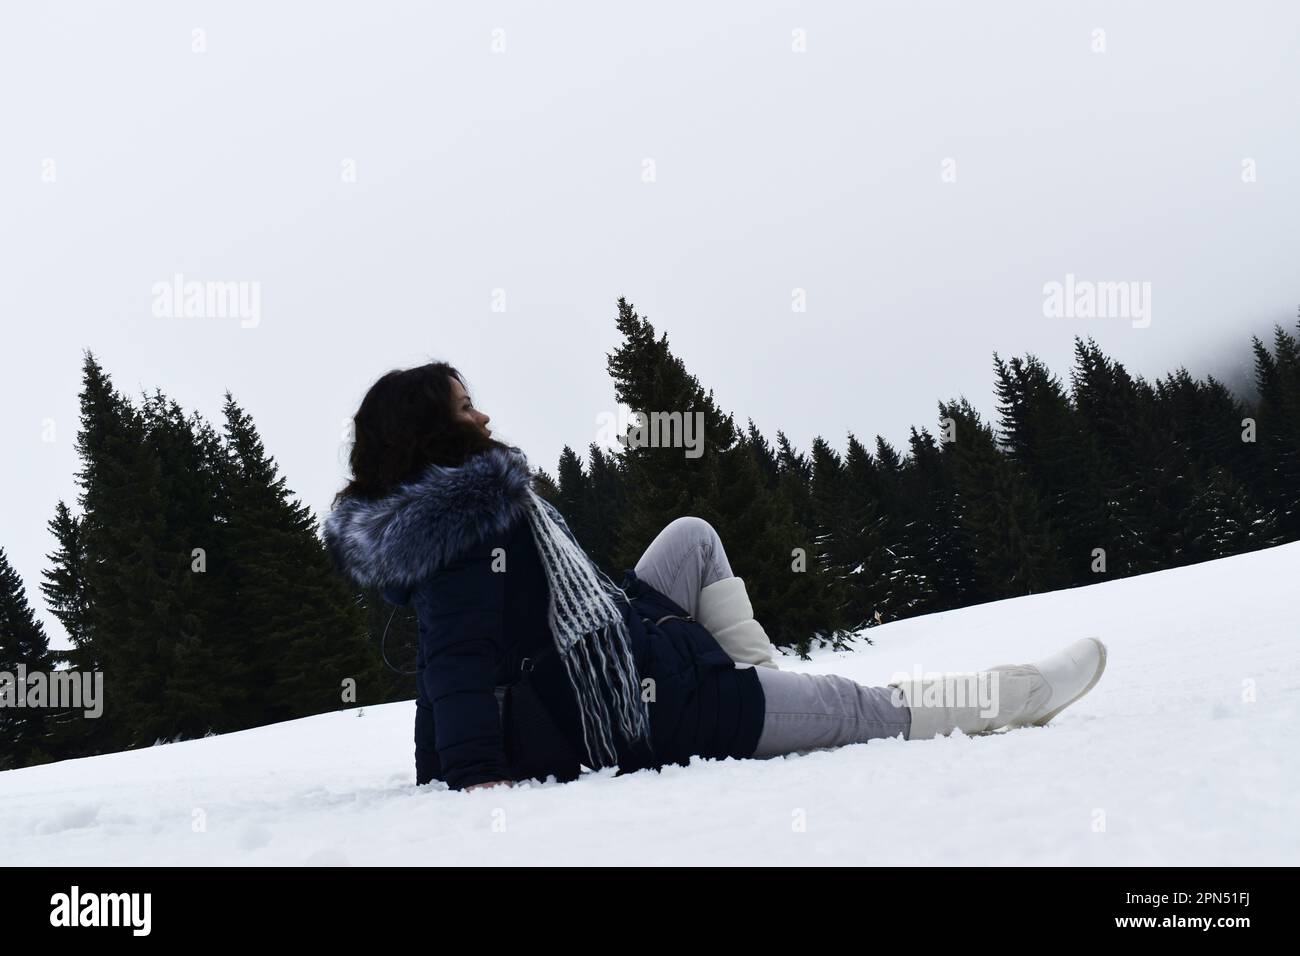 Une fille avec de longs cheveux bouclés noirs et une veste d'hiver bleu foncé, des bottes blanches, un pantalon gris et une écharpe en laine colorée assise dans la neige. Kopaonik, Serbie. Banque D'Images